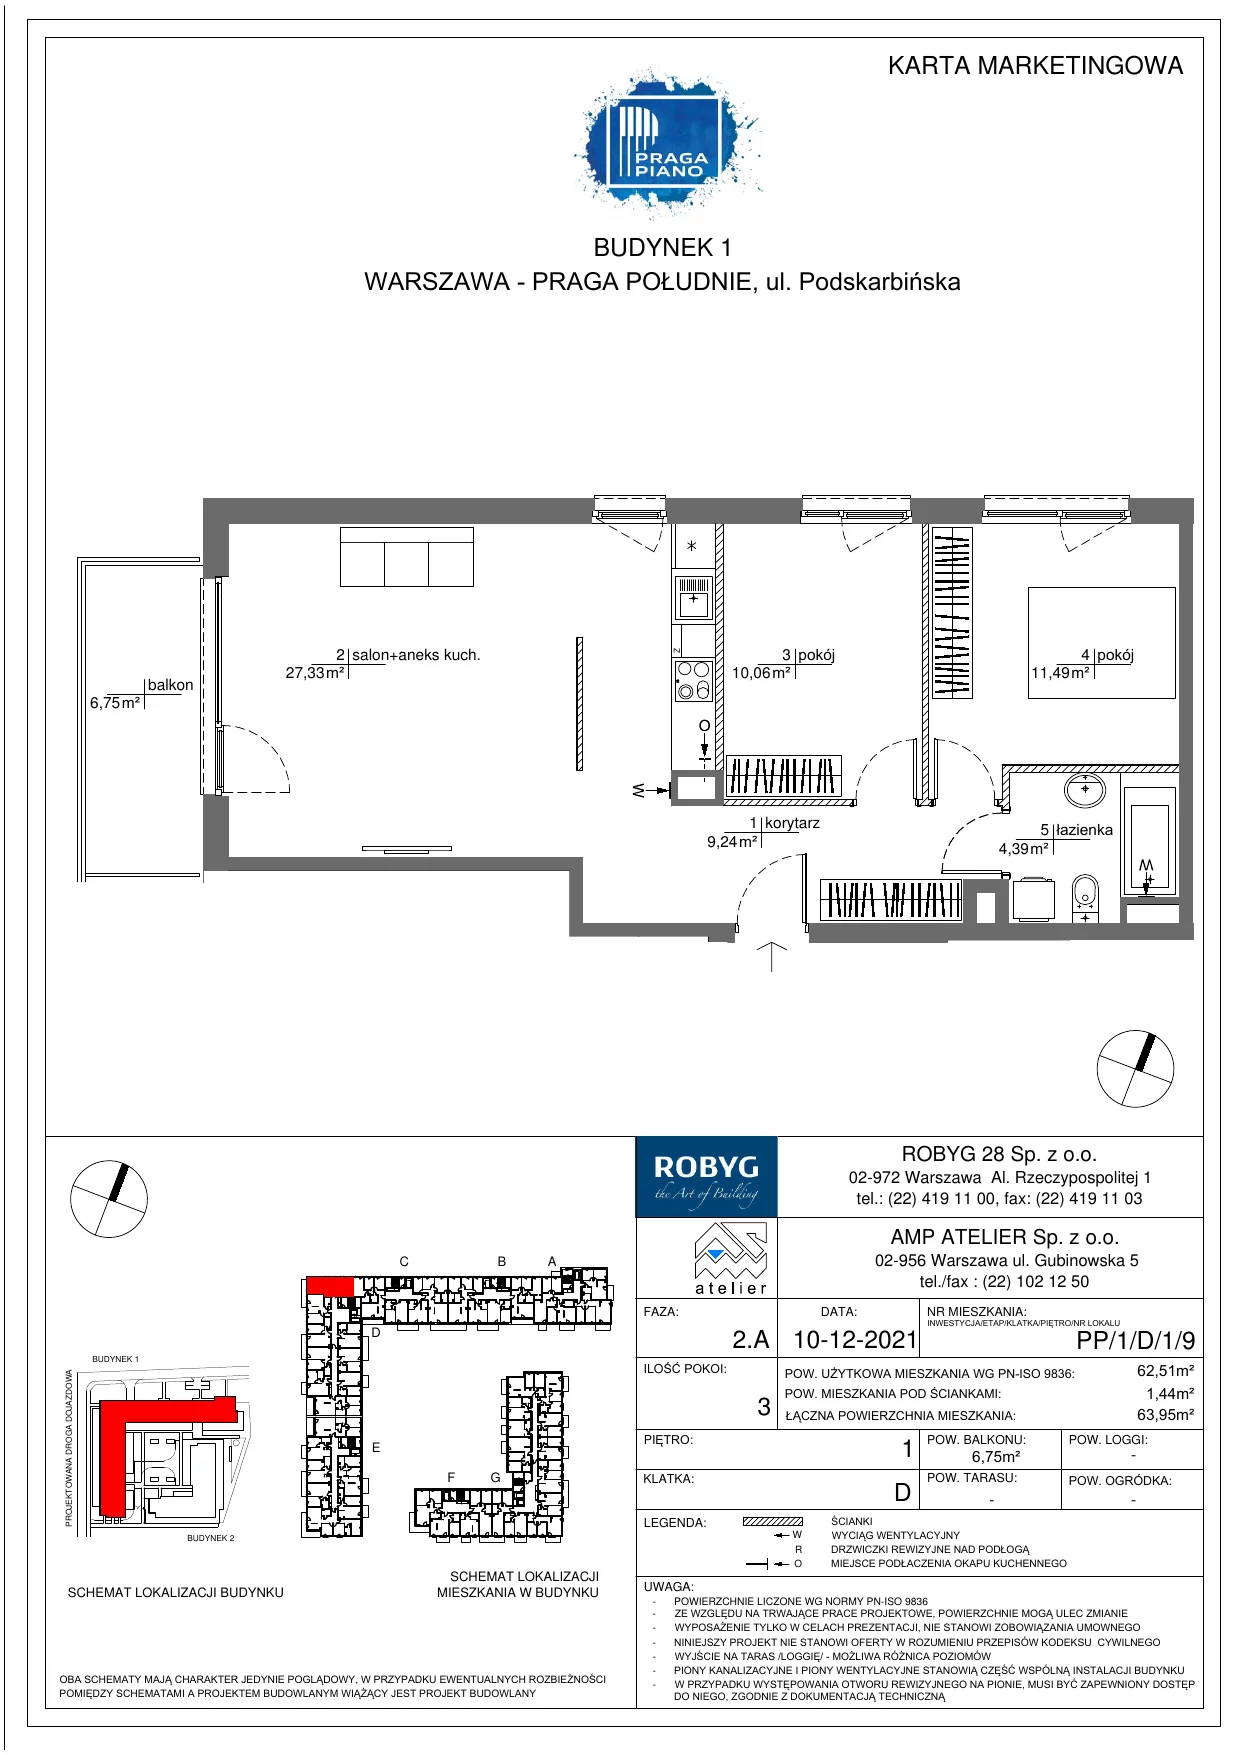 Mieszkanie 62,51 m², piętro 1, oferta nr PP/1/D/1/9, Praga Piano, Warszawa, Praga Południe, Kamionek, ul. Podskarbińska